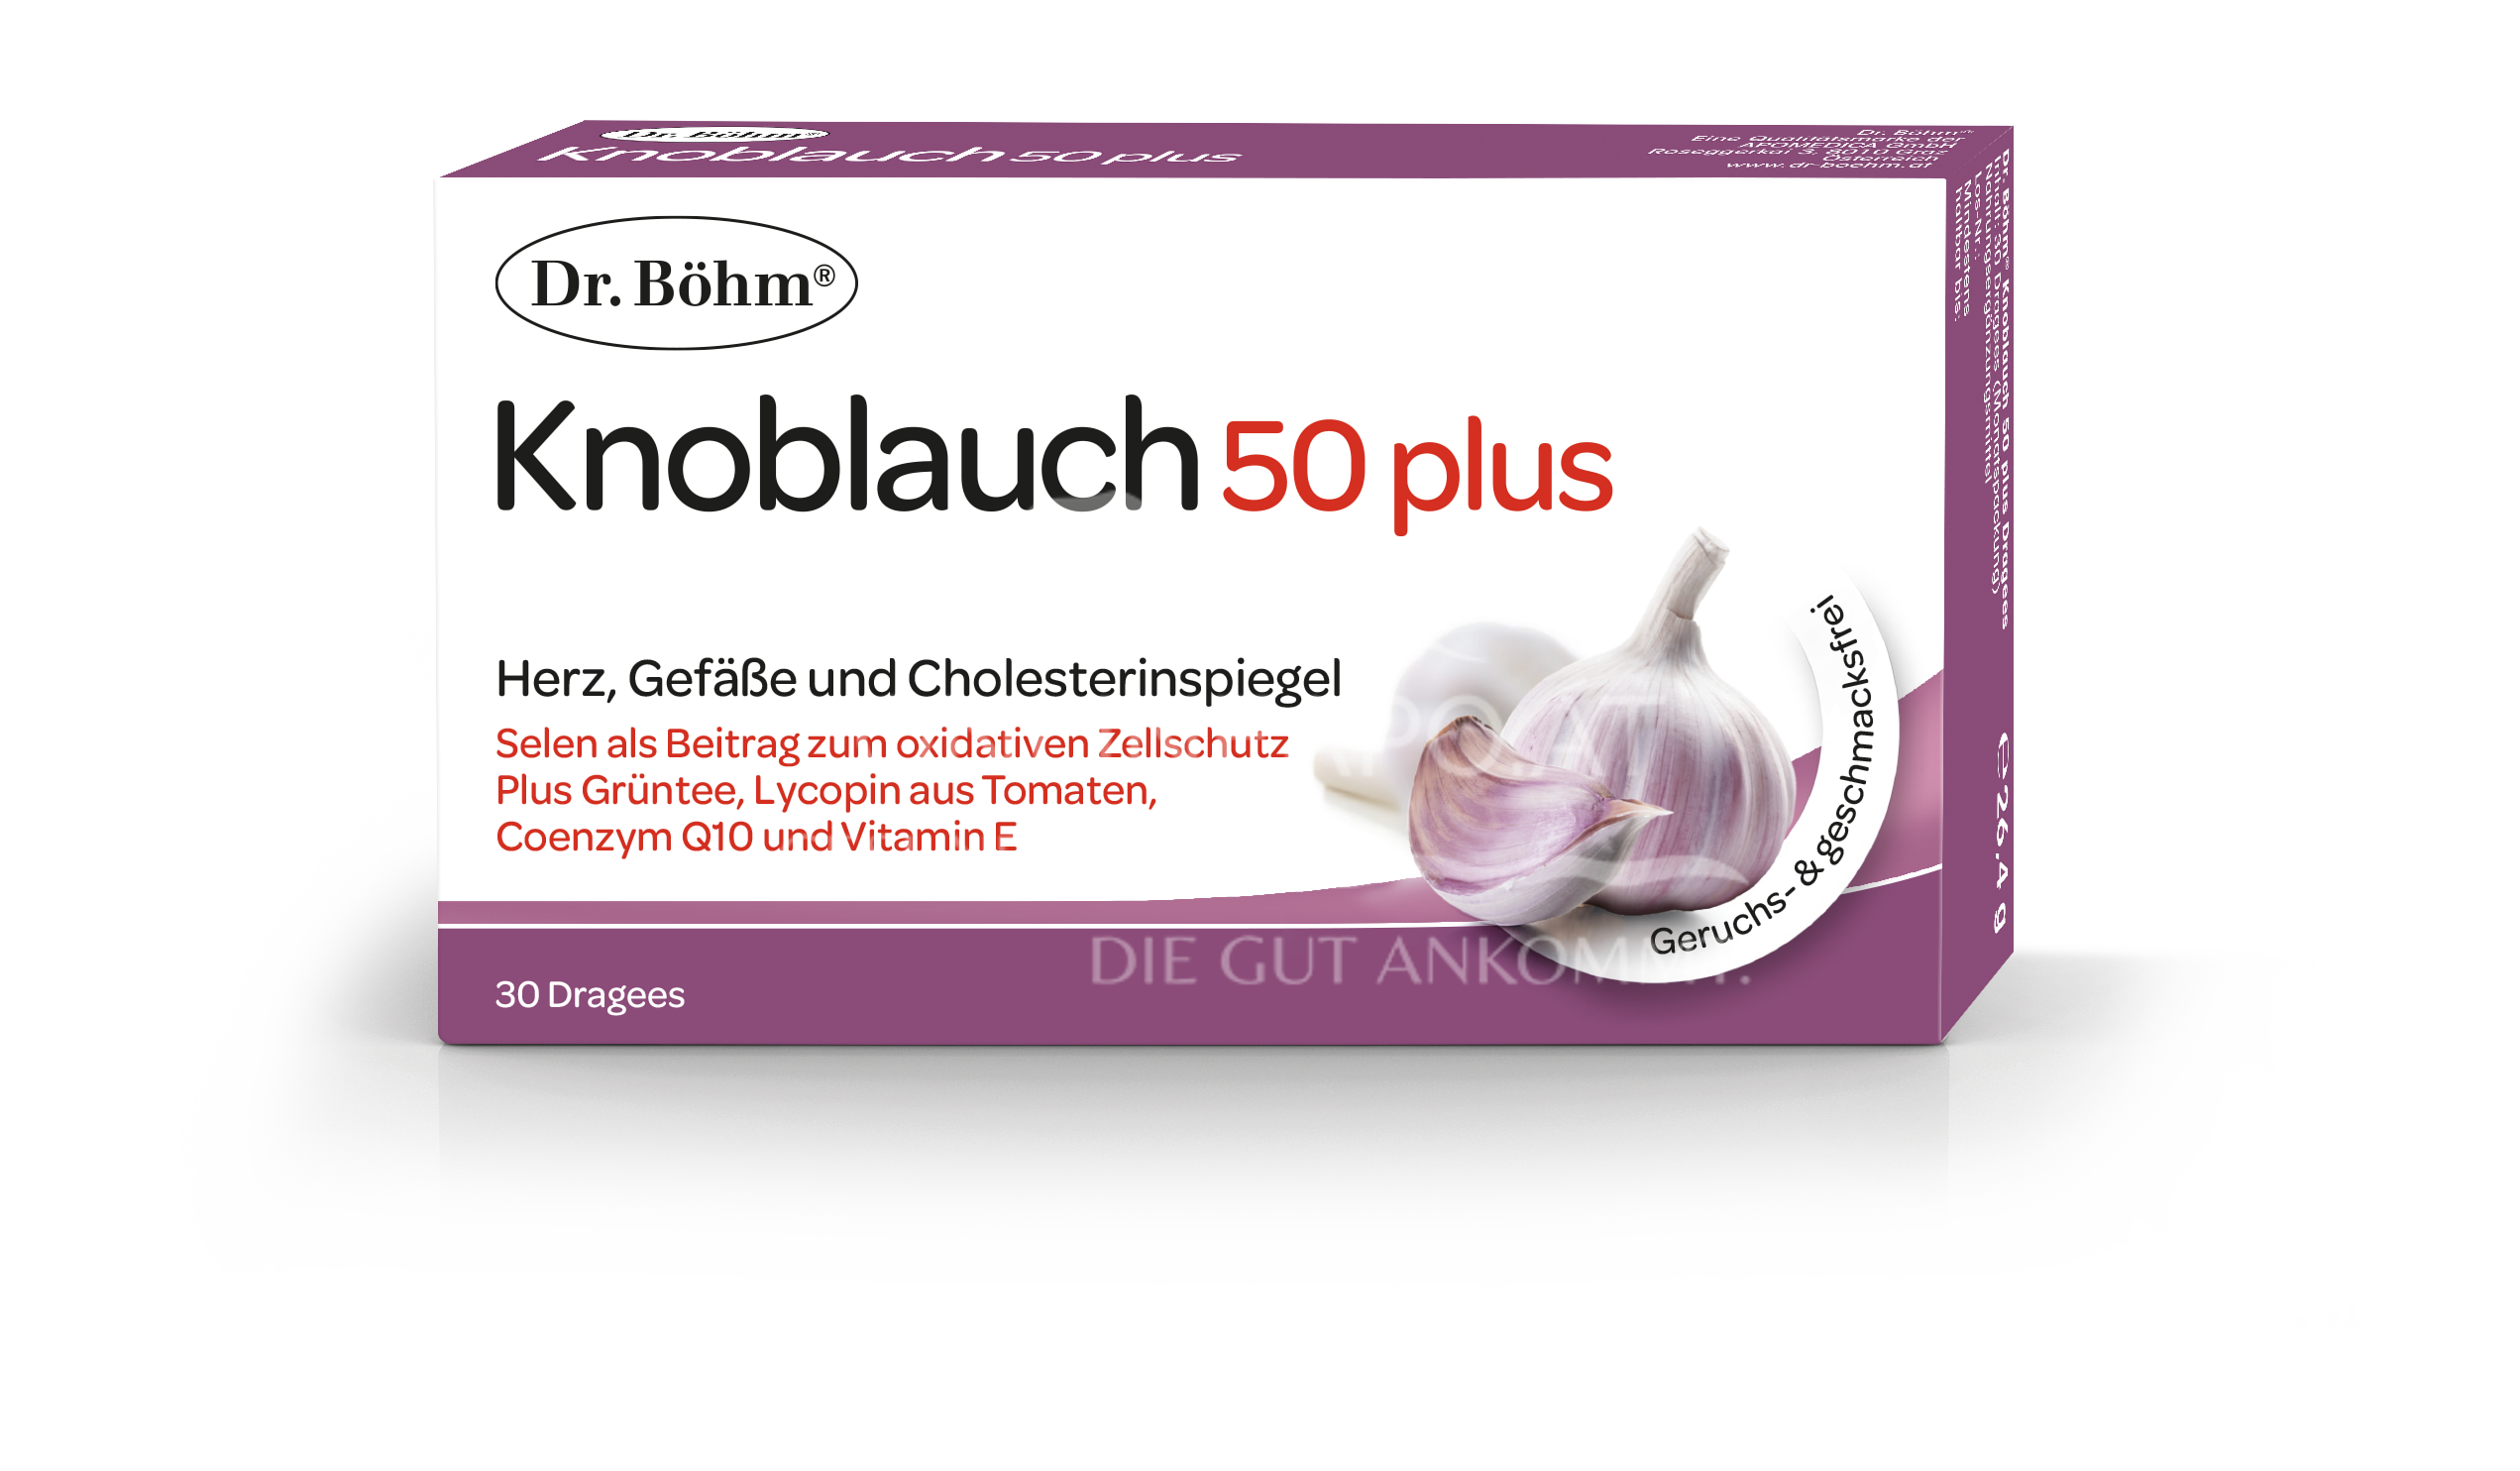 Dr. Böhm® Knoblauch 50 plus Dragees